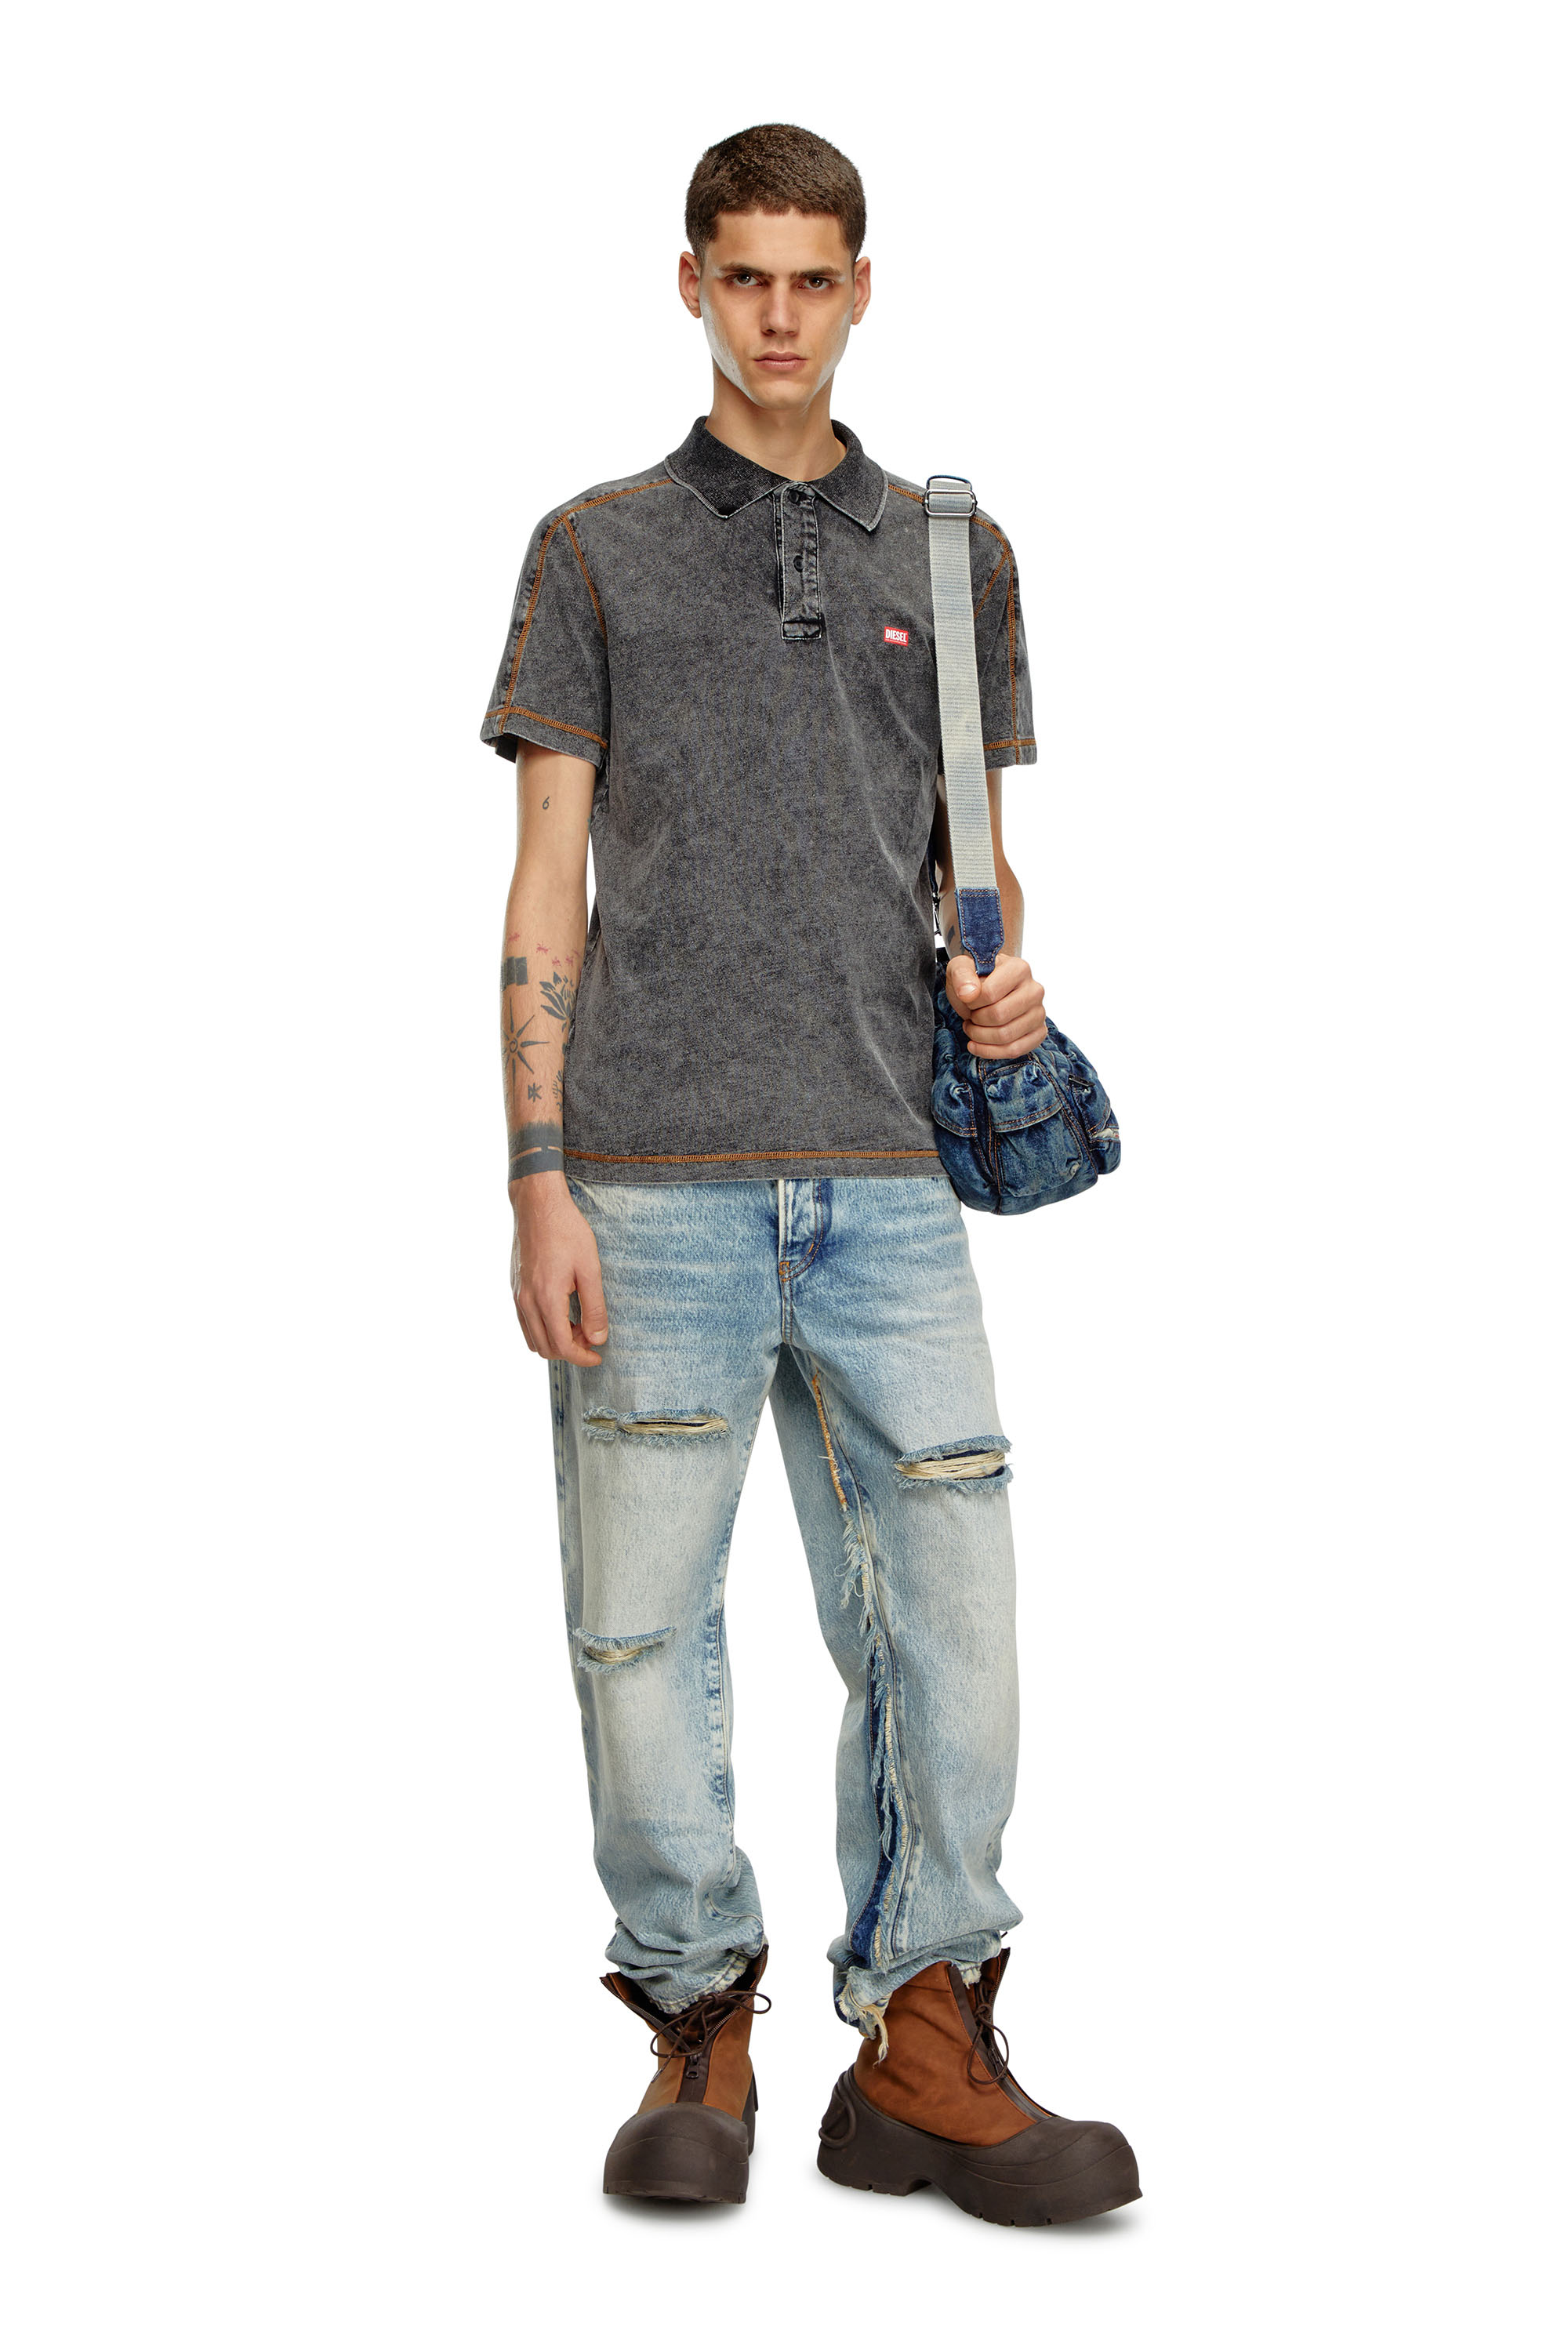 Diesel - T-SWIND, Male Polo shirt in denim-effect jersey in グレー - Image 2